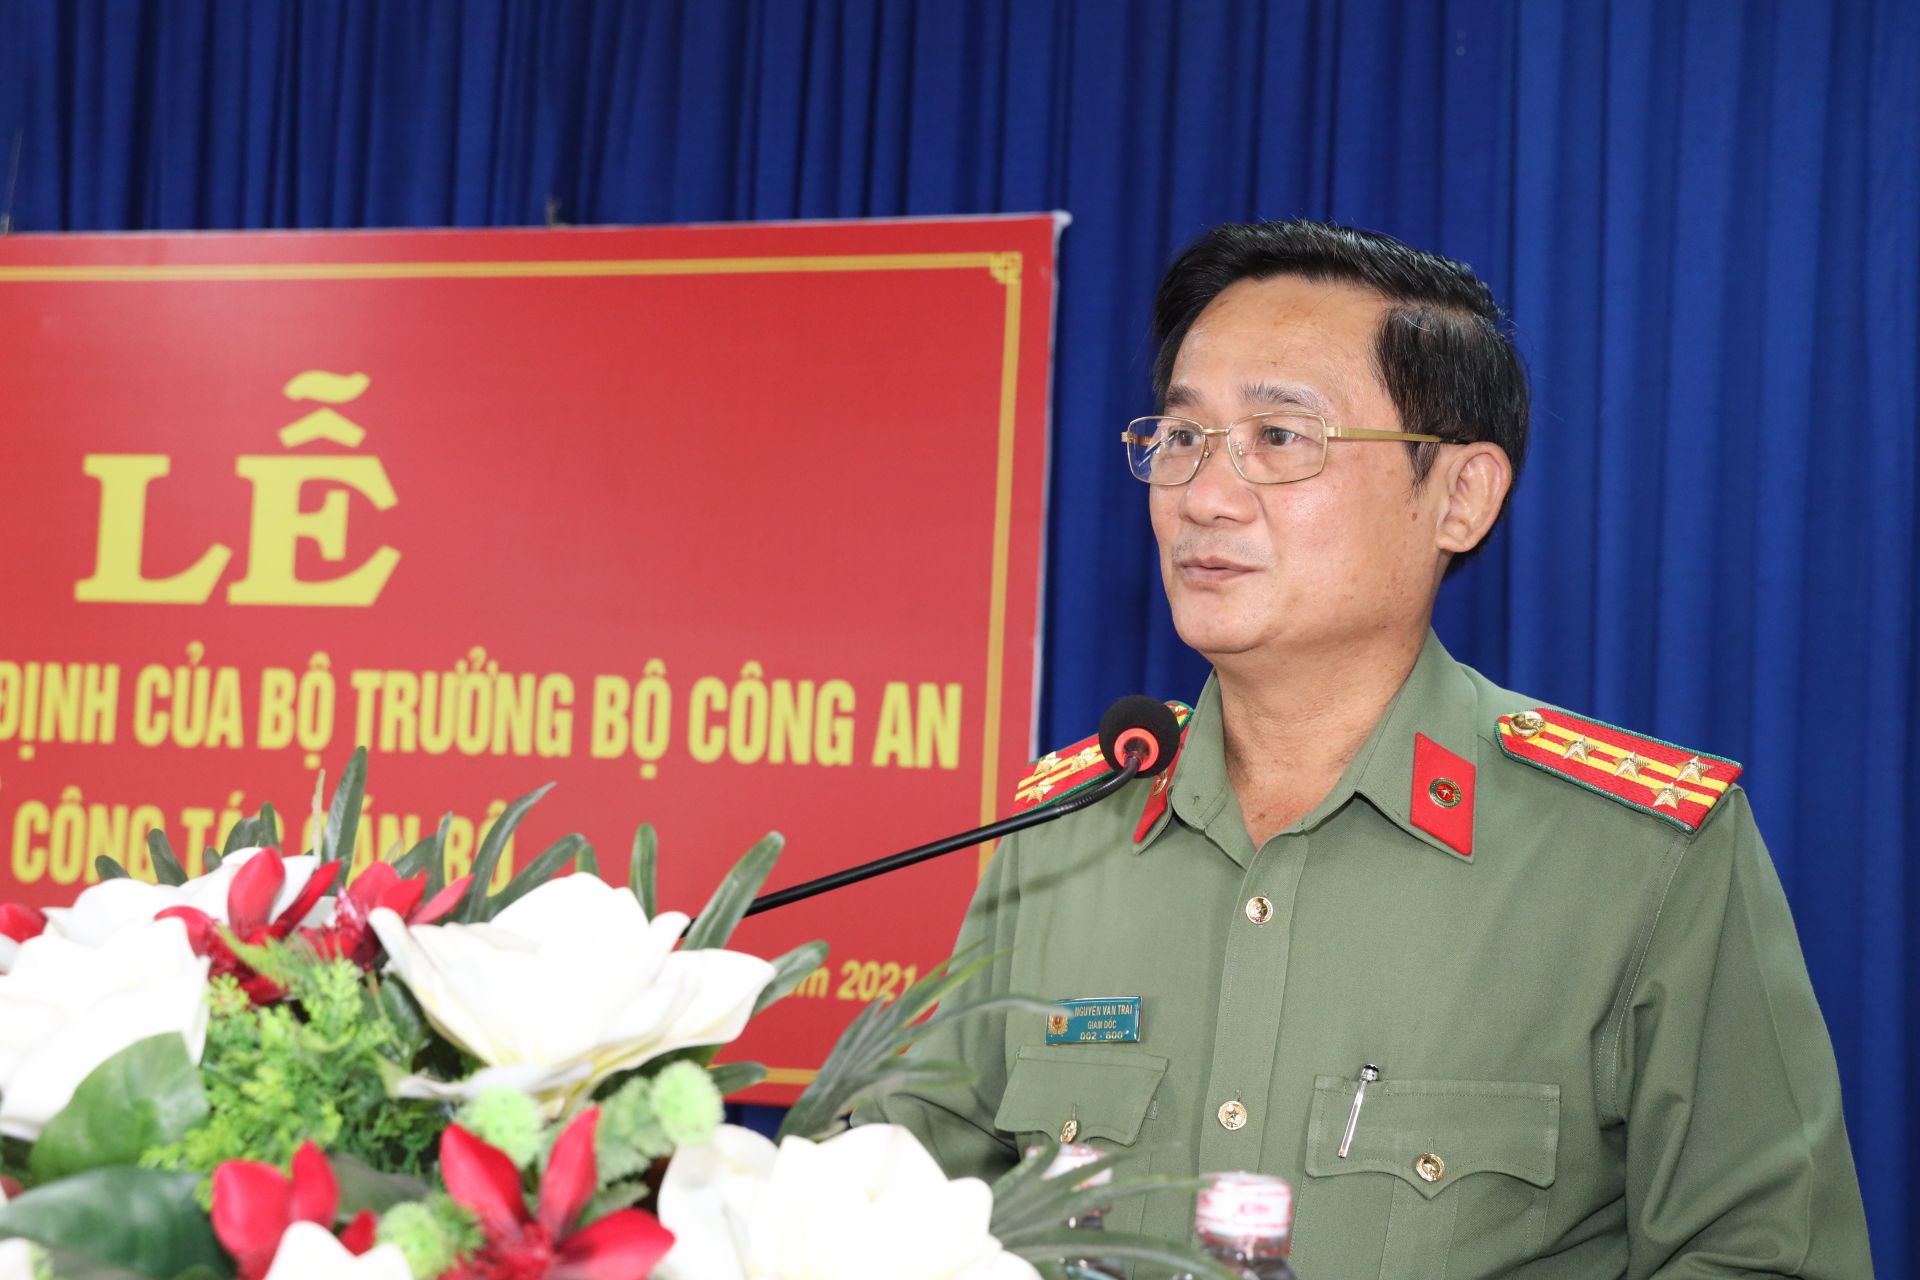 Bộ trưởng Tô Lâm điều động 6 lãnh đạo cấp trưởng công an tỉnh Tây Ninh  - Ảnh 1.